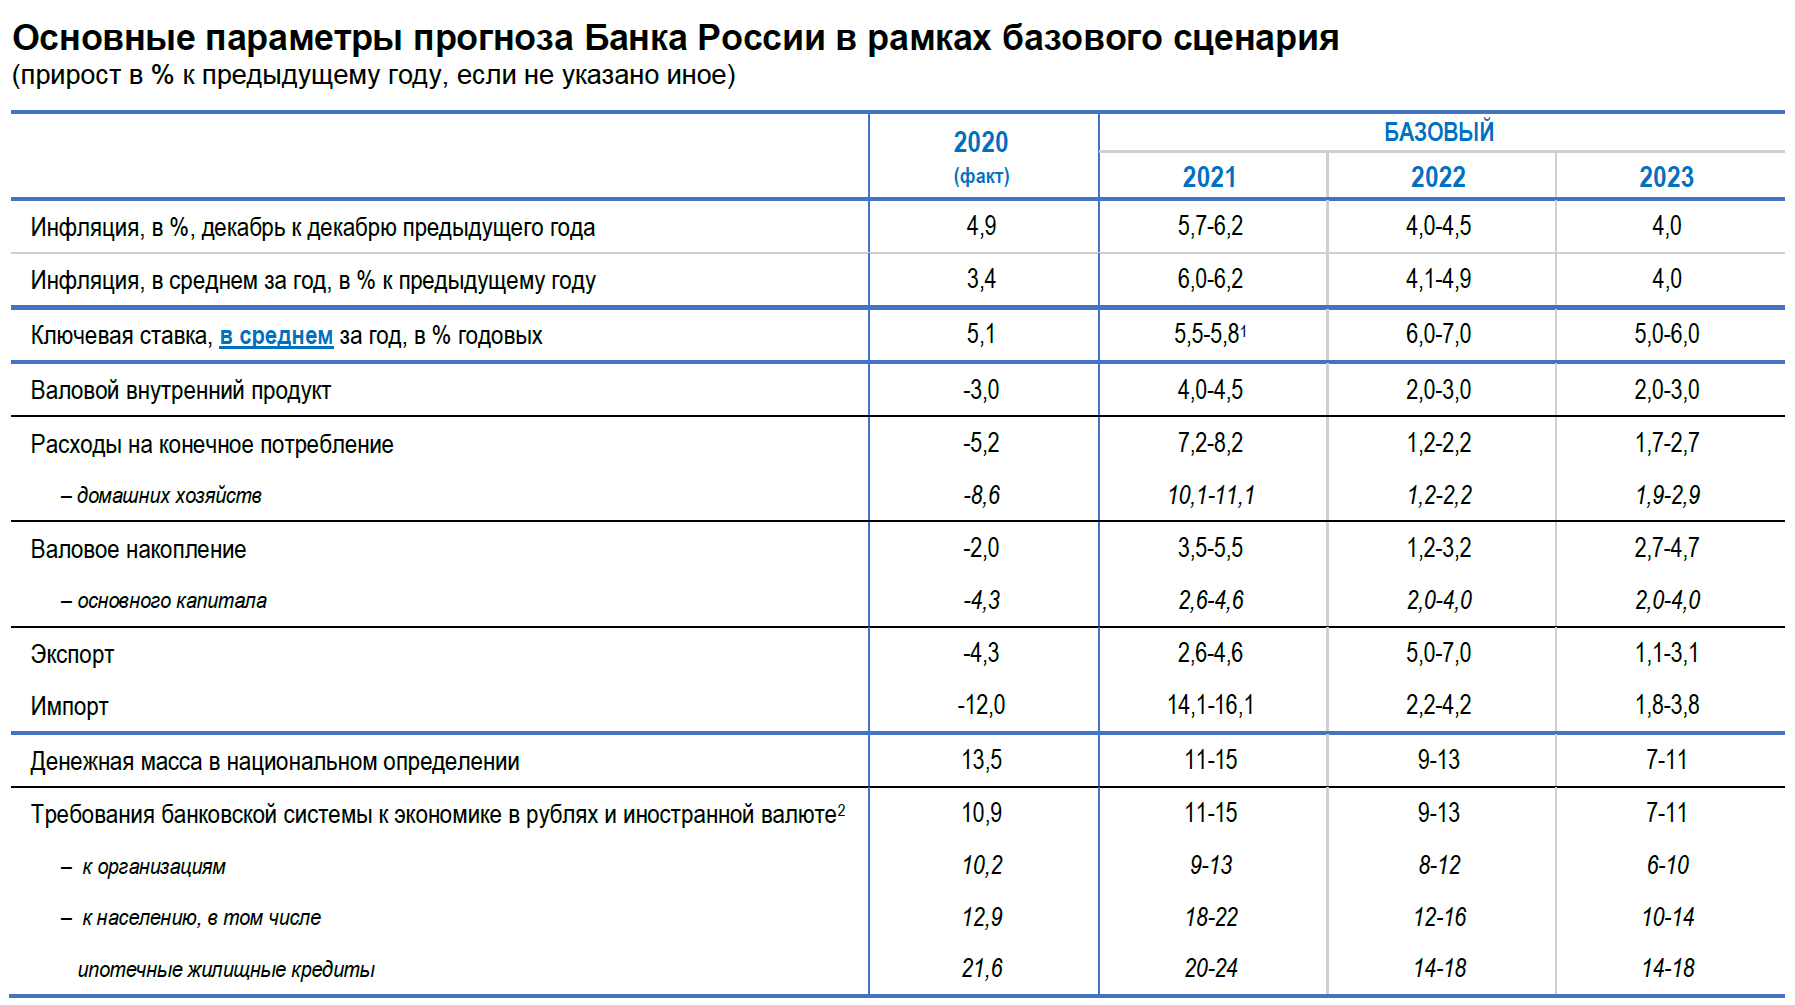 П 5 прогноз. Ключевая ставка банка России 2022. Ключевая ставка ЦБ РФ таблица 2023. Динамика изменения ключевой ставки ЦБ РФ 2020. Ключевая ставка центрального банка в 2021 г.